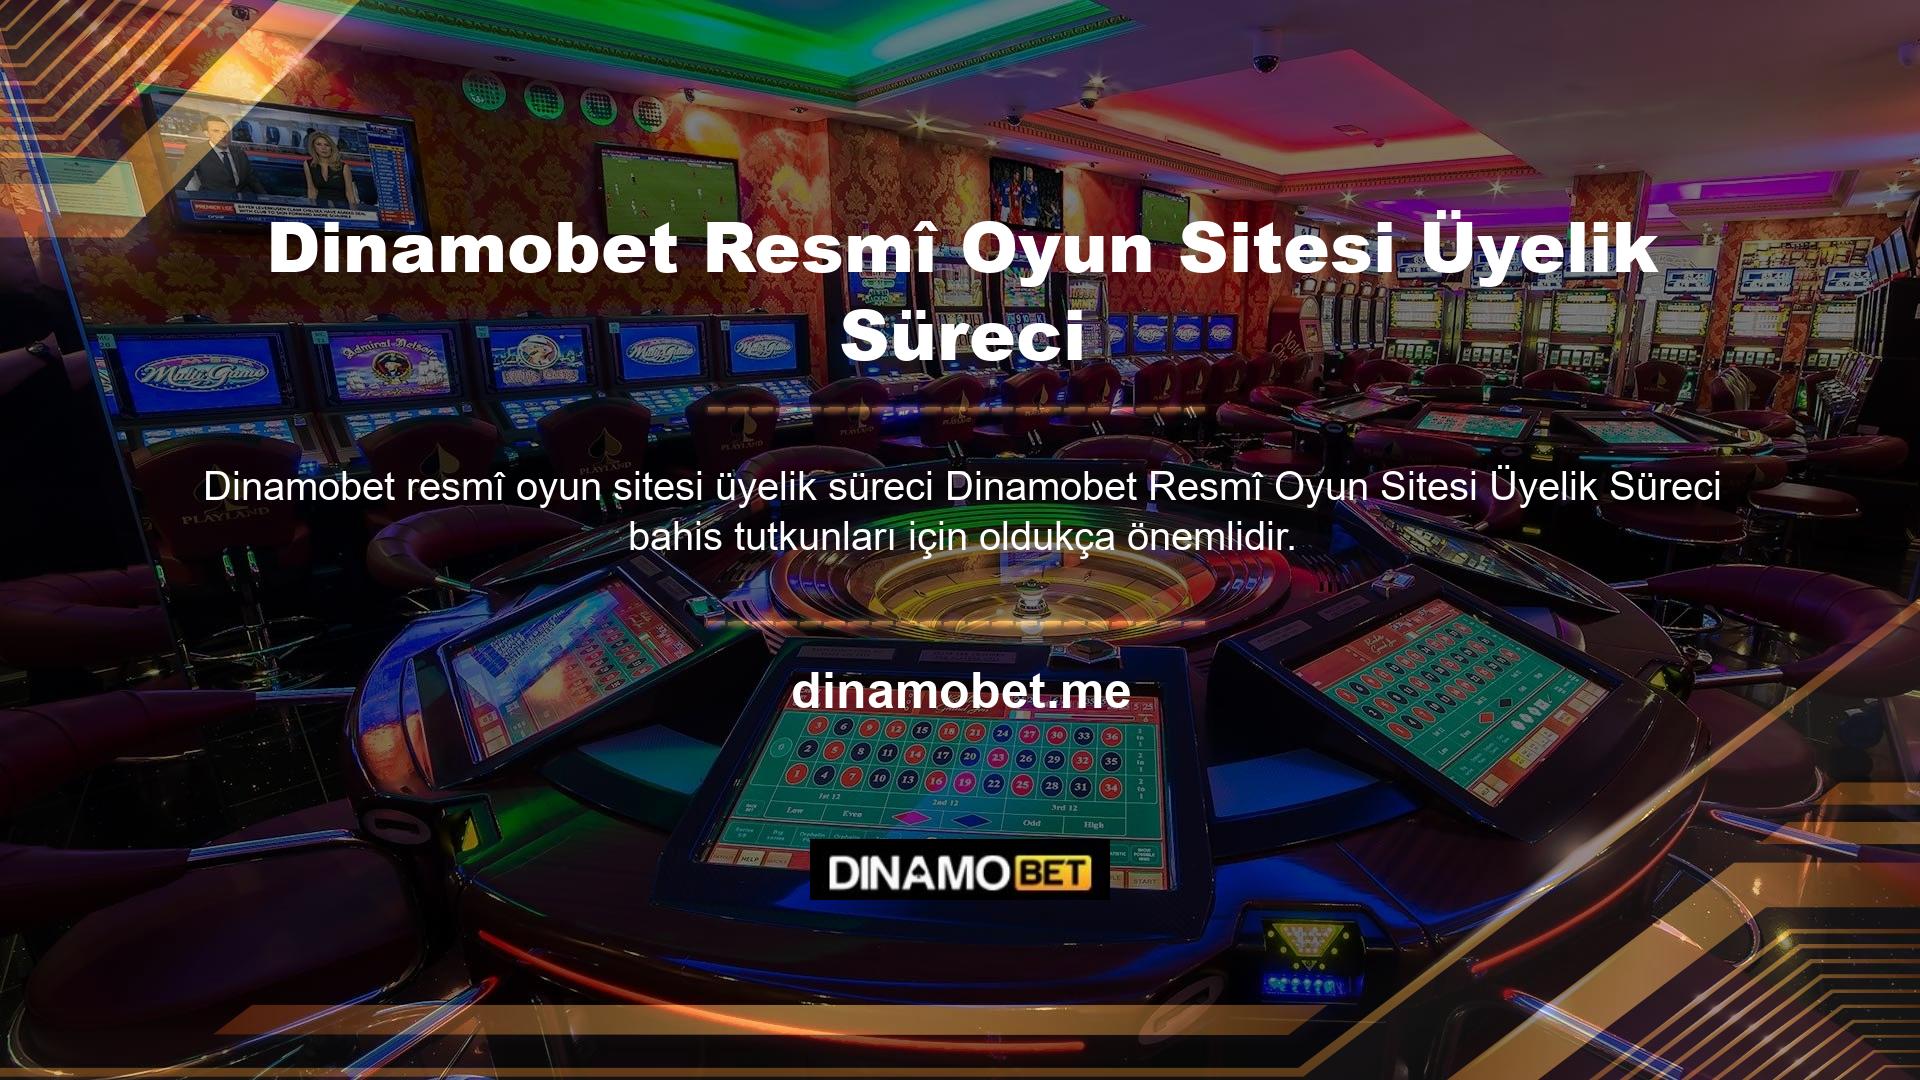 Dinamobet bahis sitesinde özel günler, yatırımlar ve oynanacak oyunlar çeşitli şekillerde sunulmaktadır